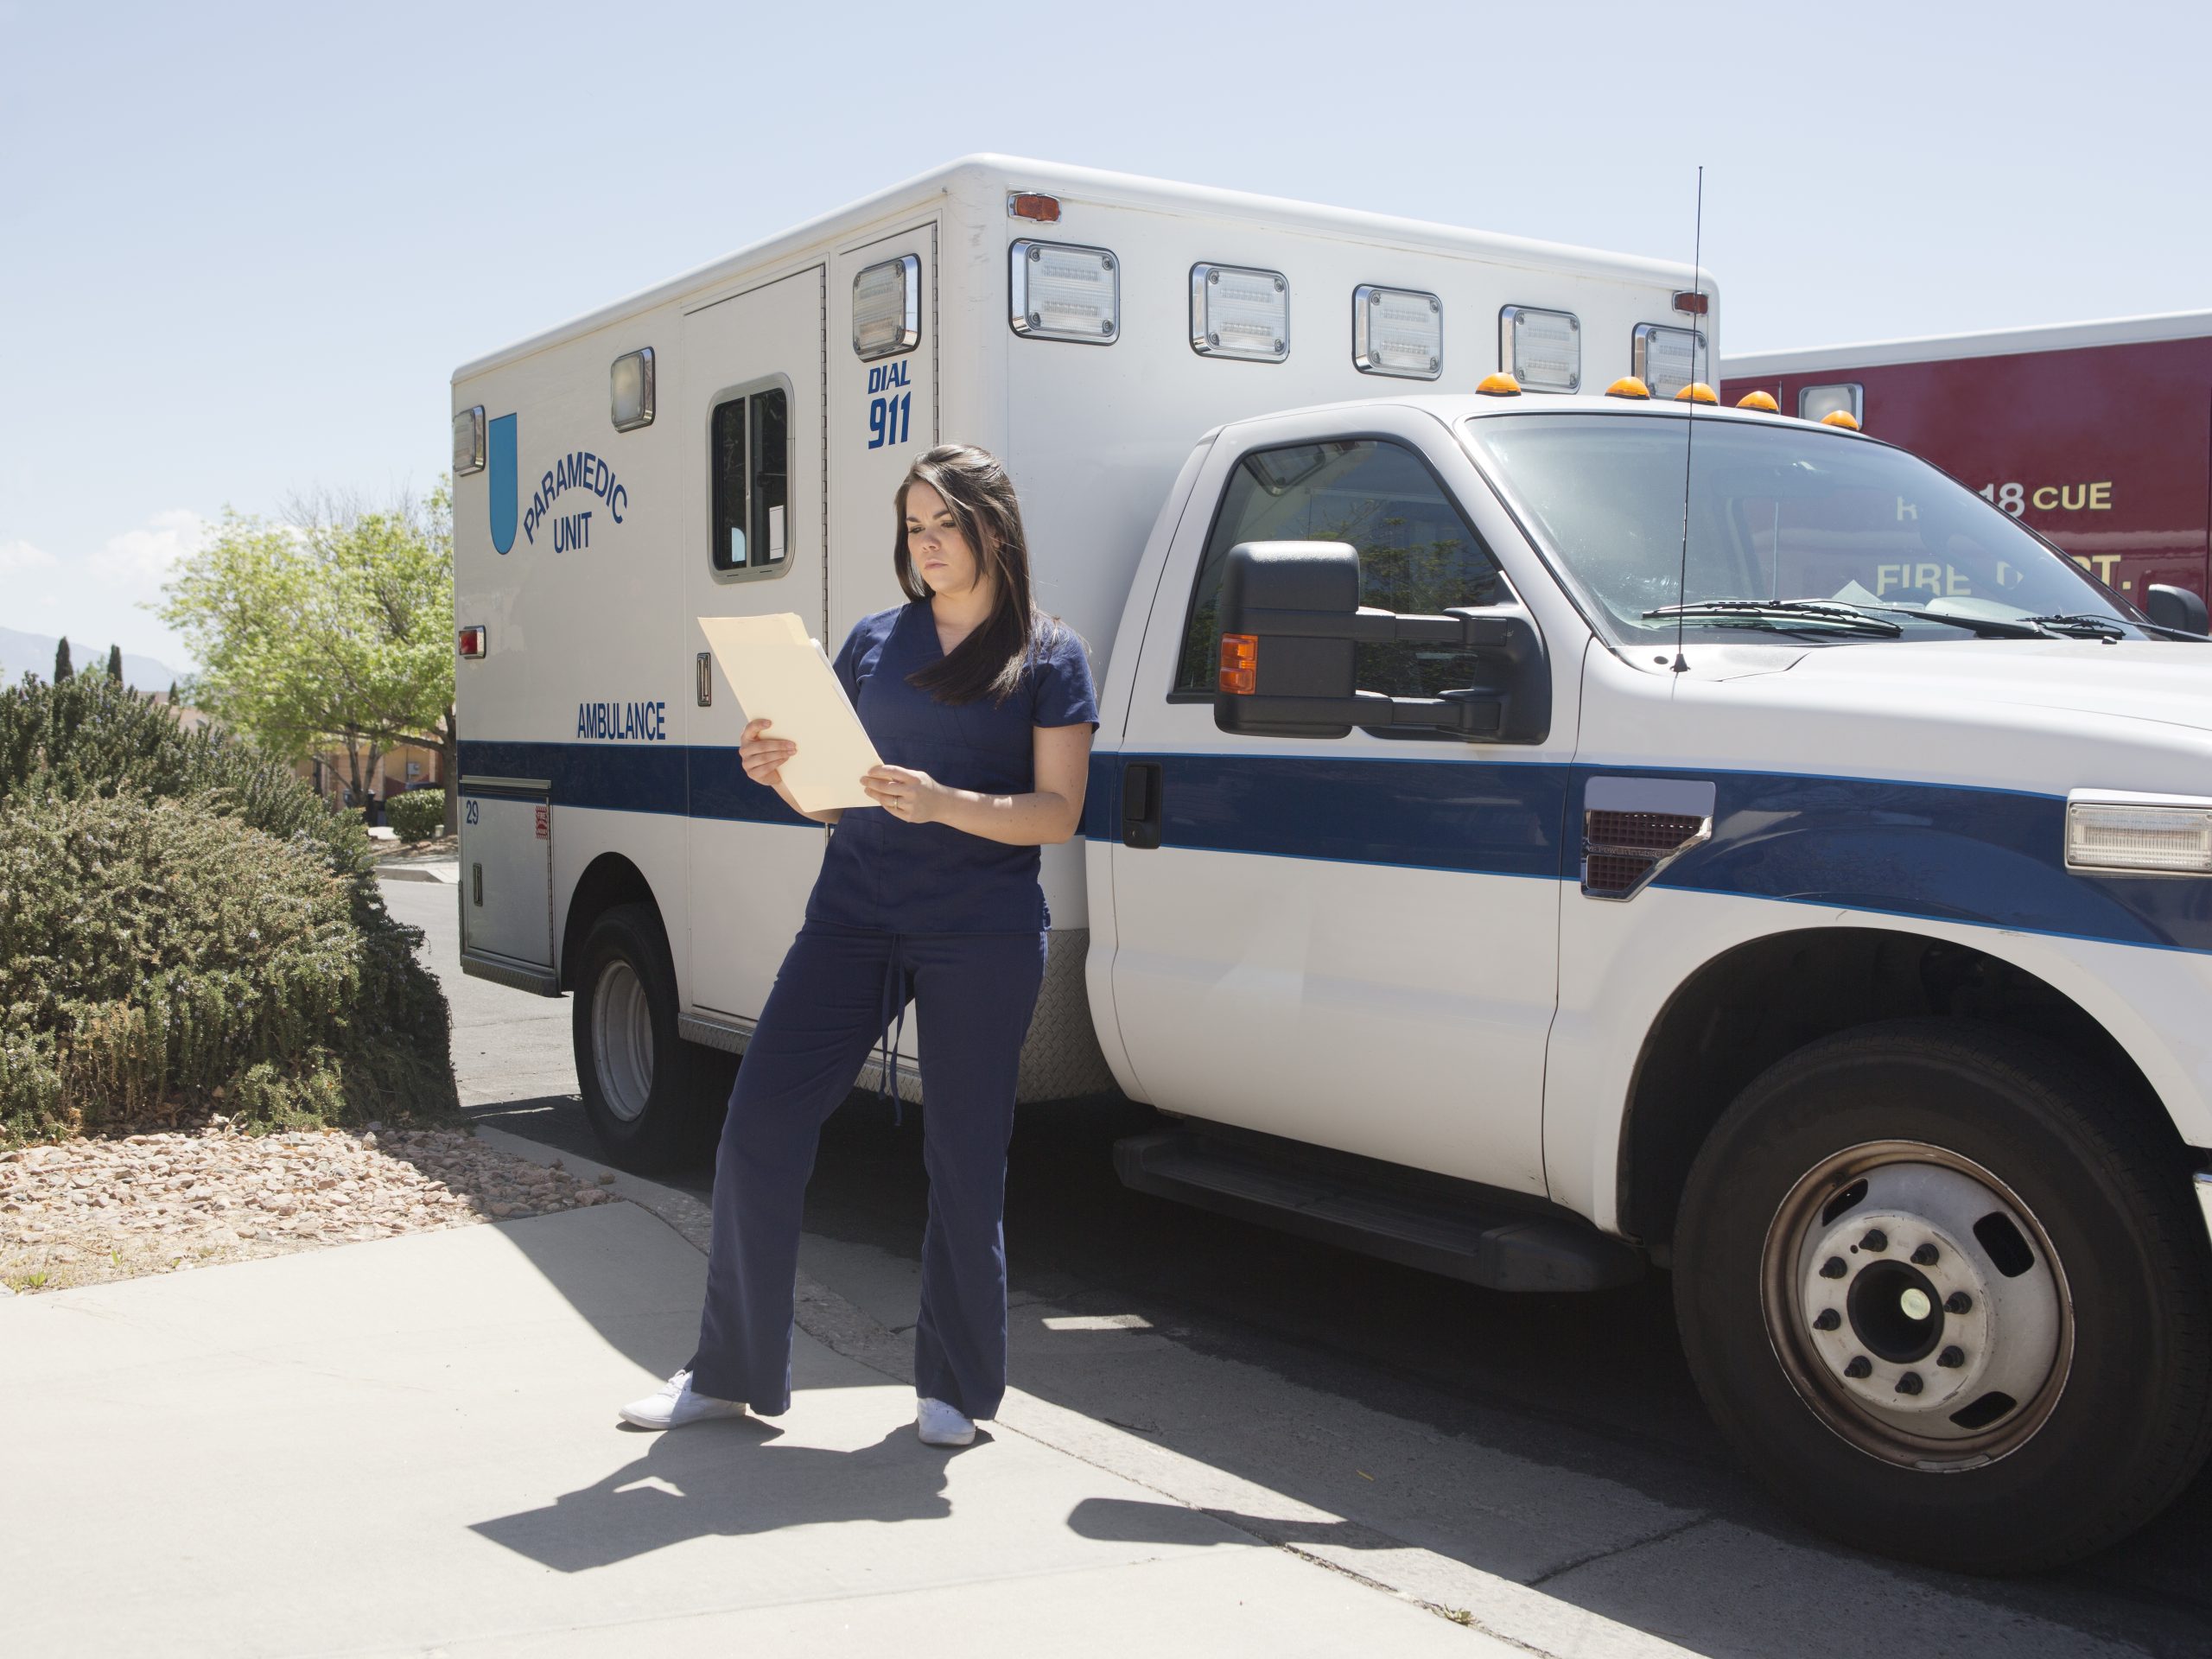 FootballR - NFL - Eine Frau in der Nähe eines Krankenwagens.